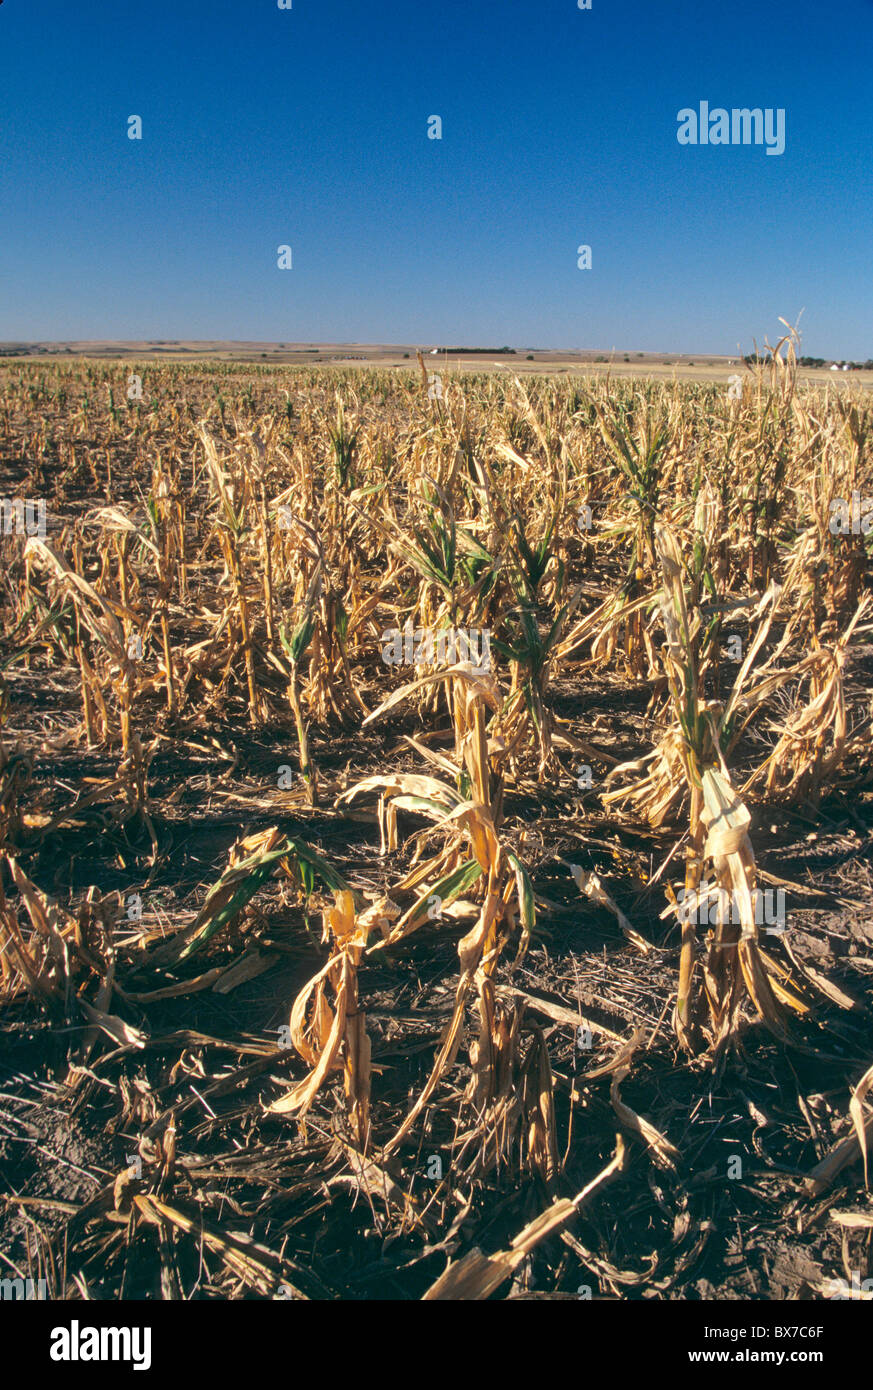 El fracaso de la cosecha debido a la sequía y el granizo, Foto de stock